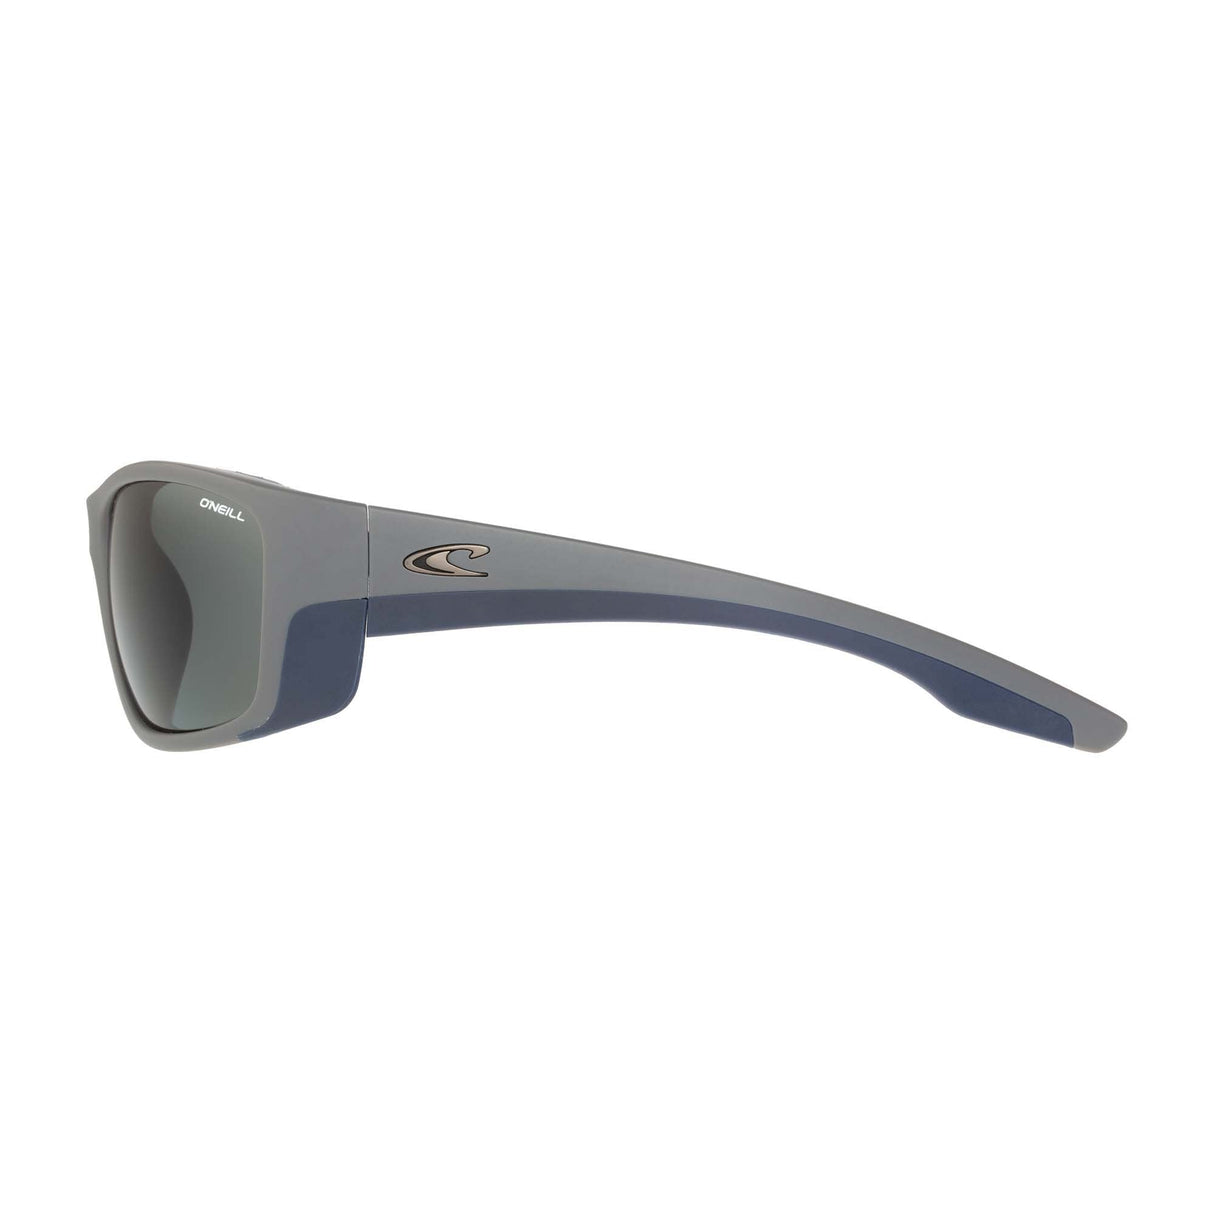 O'Neill 9017 2.0 Sunglasses - 108P-Sunglasses-troggs.com